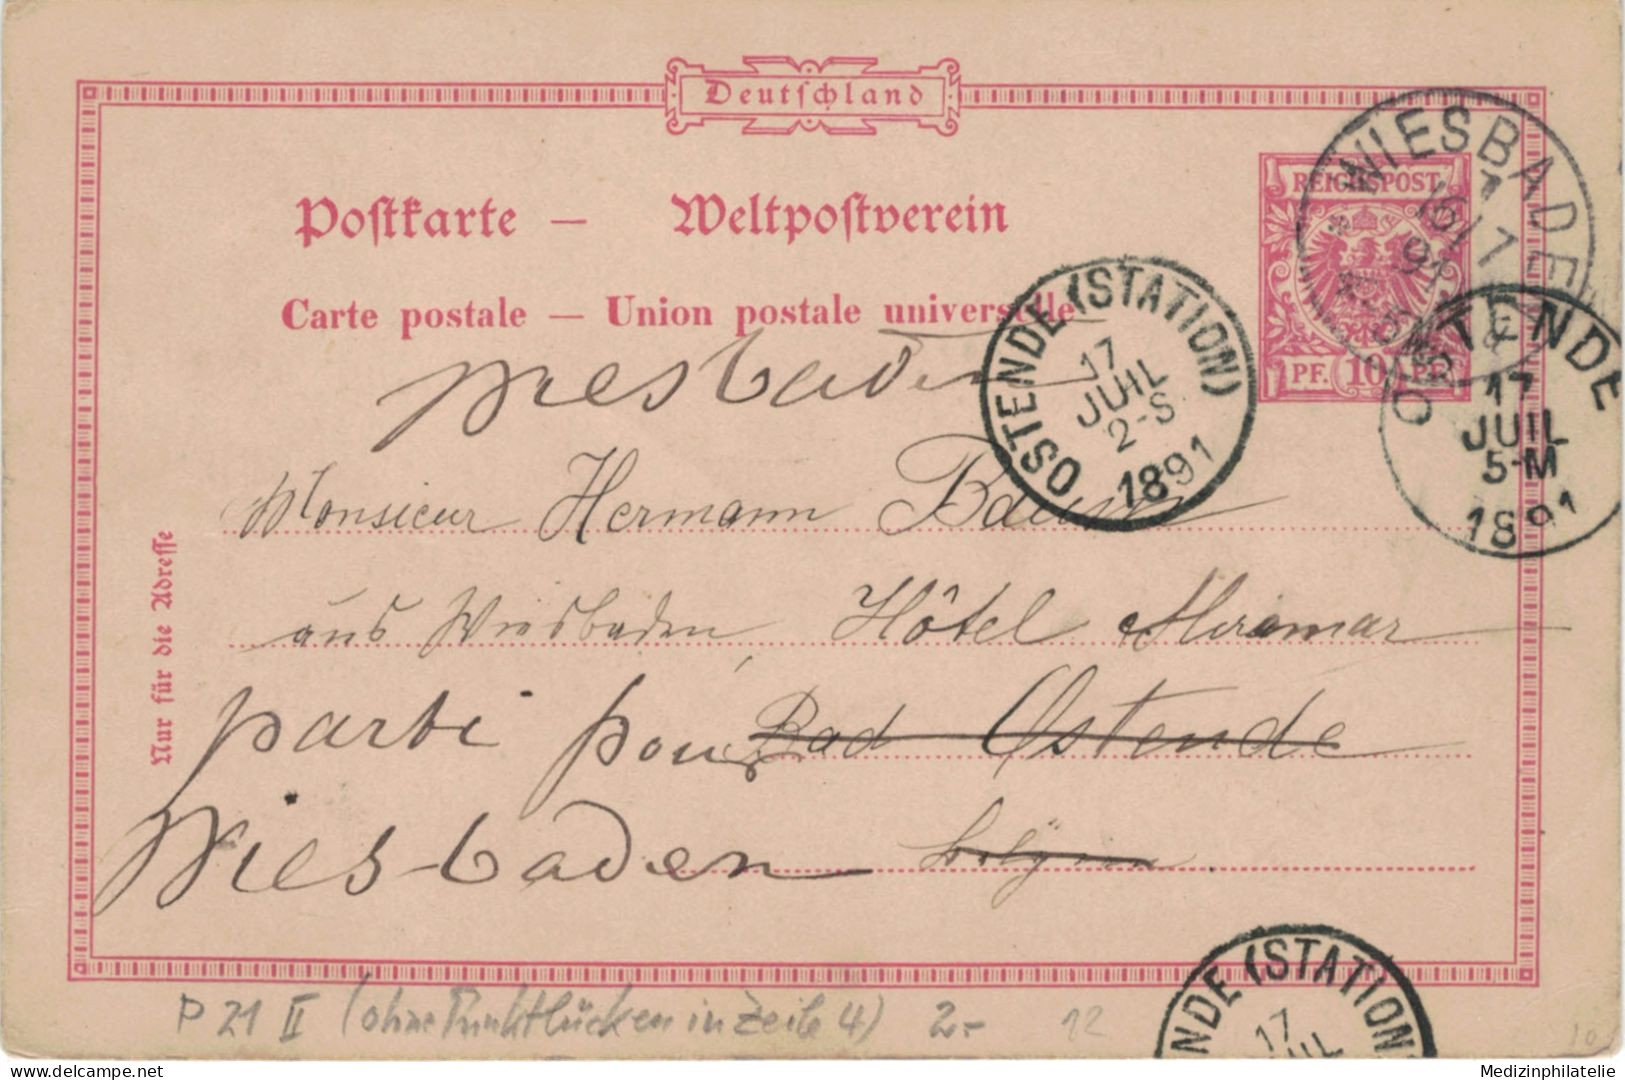 Ganzsache 10 Pfennig - Wiesbaden 1891 > Ostende Station, - Briefkaarten